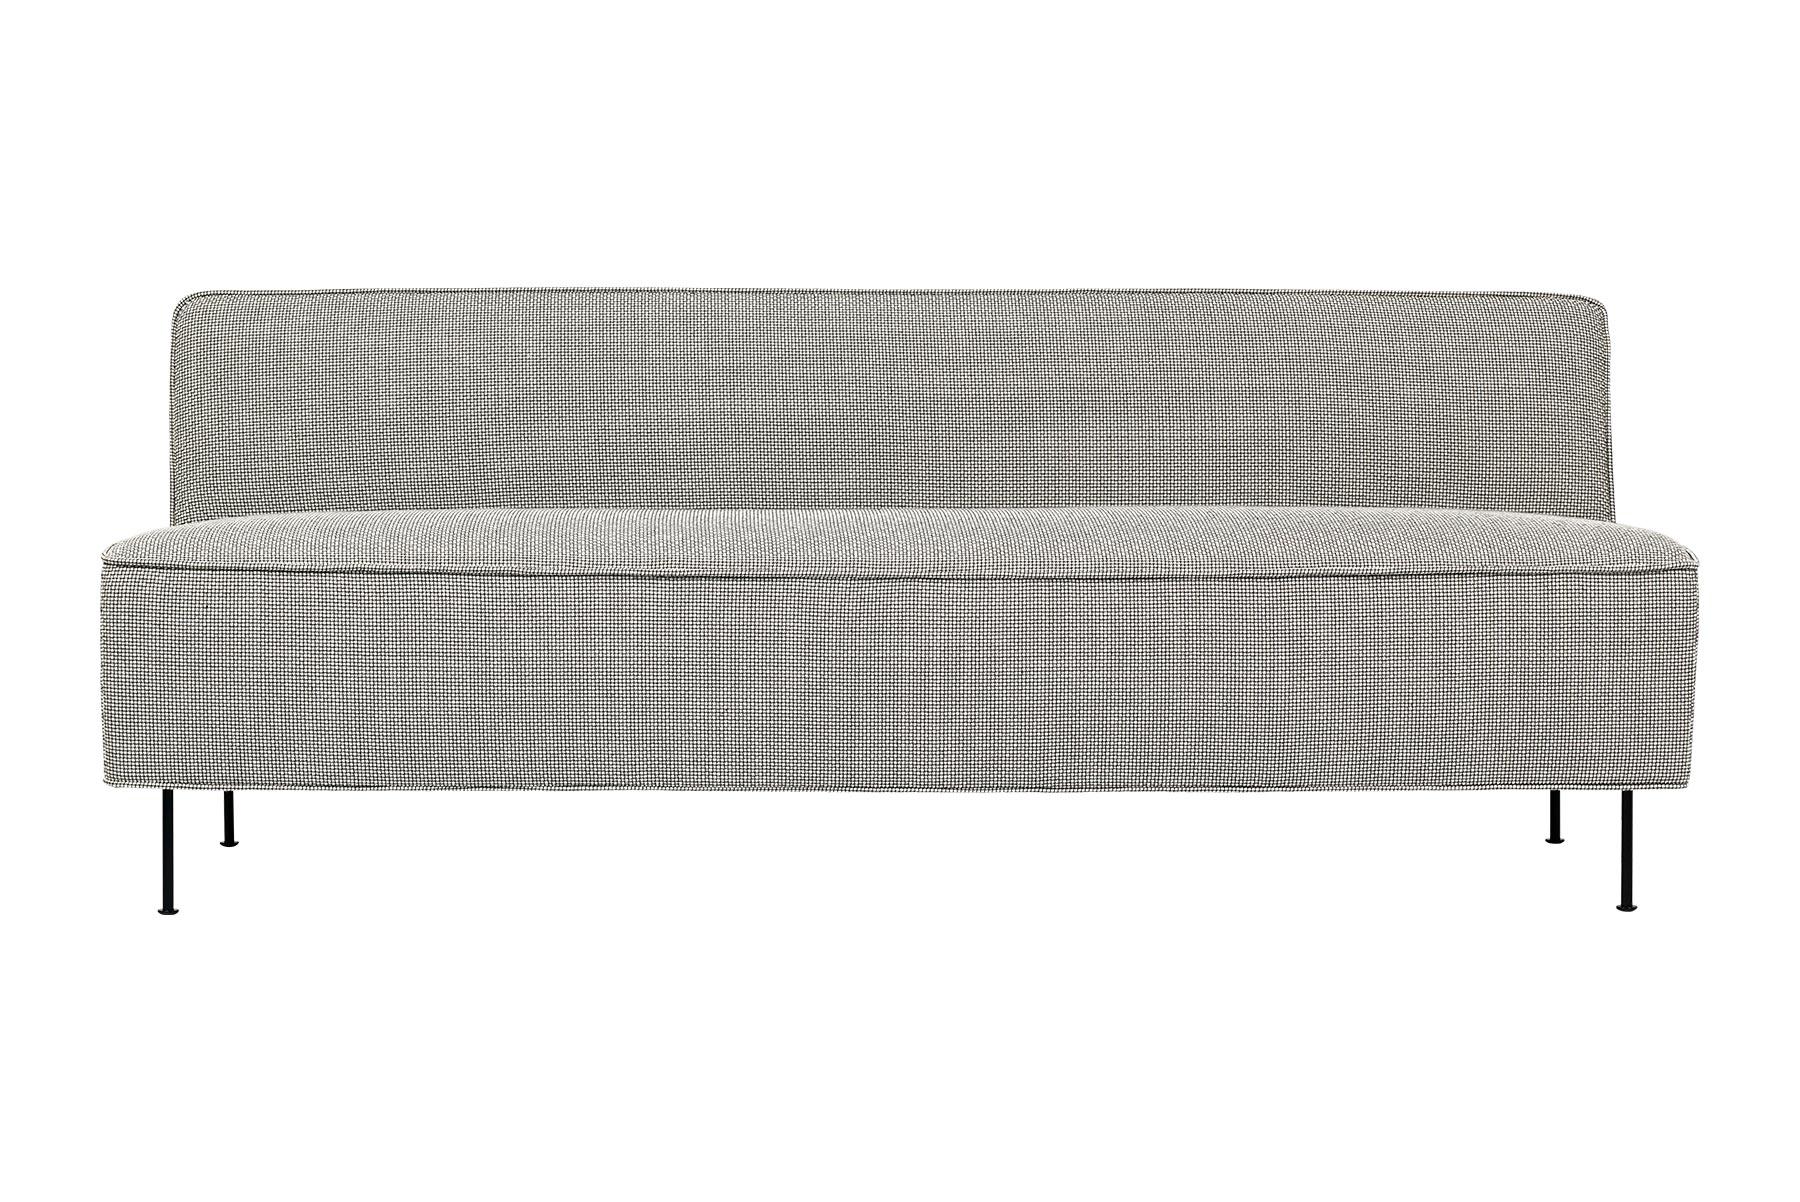 Das Modern Line Sofa wurde 1949 von Greta M. Grossman entworfen. Modern Line war einer ihrer elegantesten und minimalistischsten Entwürfe und wurde besonders dafür gelobt, dass er ihren Hintergrund im skandinavischen Design repräsentiert. Ihre